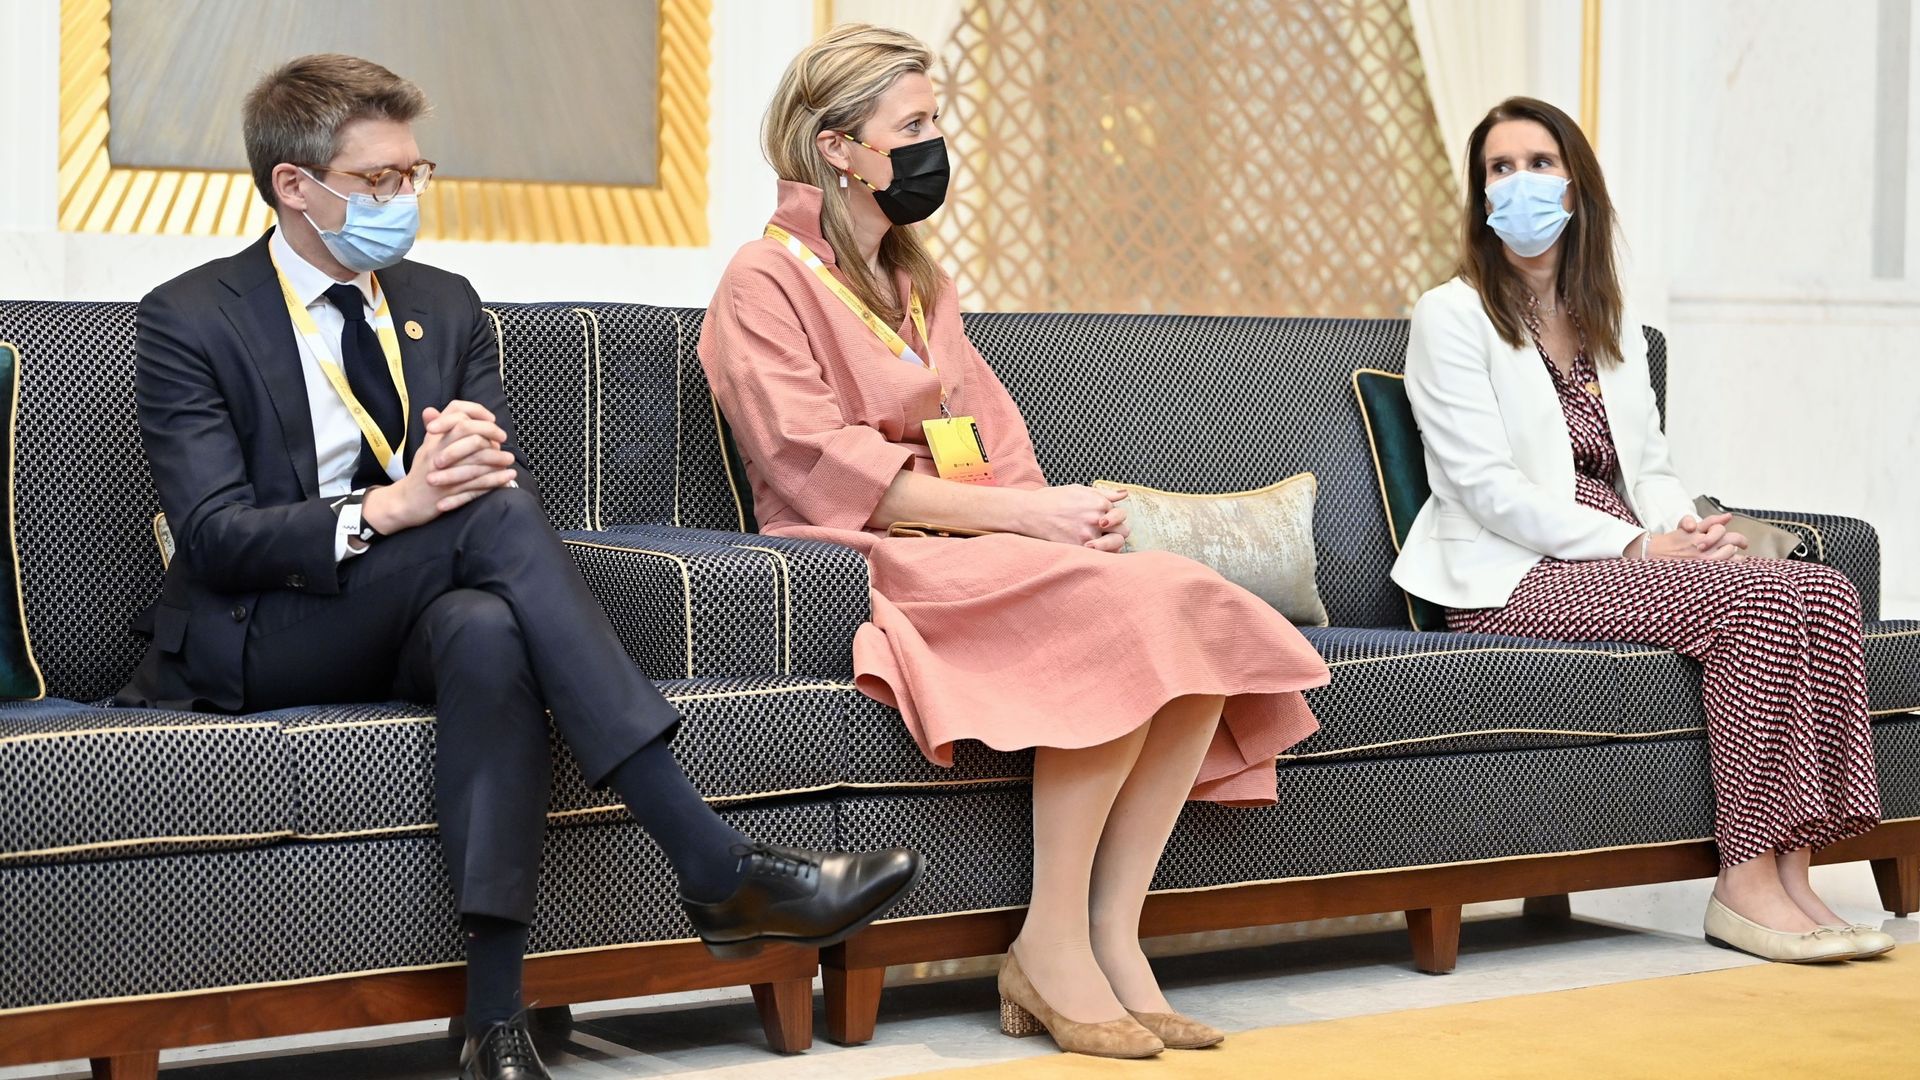 Le vice-Premier ministre Pierre-Yves Dermagne, la ministre fédérale Annelies Verlinden et la ministre fédérale Sophie Wilmes photographiés lors d’une visite de l’Expo 2020 de Dubaï au dernier jour d’une visite officielle au Sultanat d’Oman et aux Emirats 